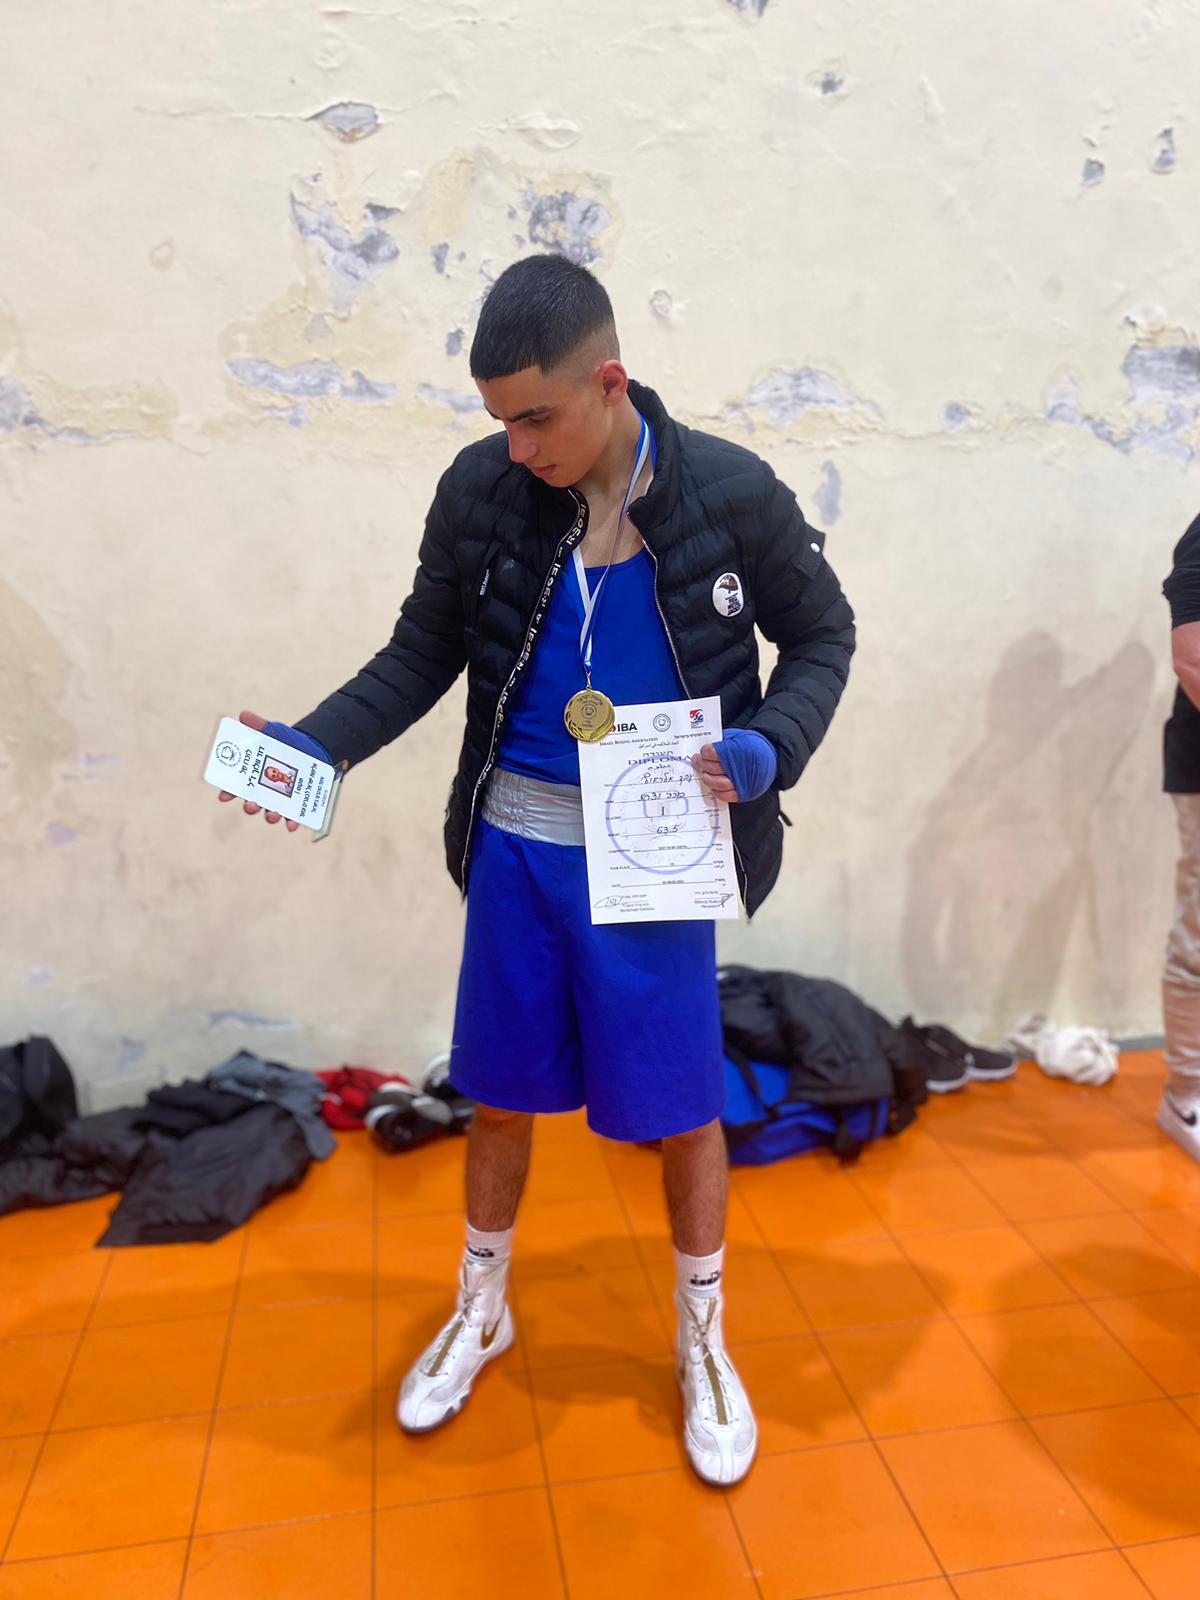 تهنئة للطالب عبد الرؤوف عبد الجواد من الصف الثاني عشر أ٢ لفوزه  ببطولة اسرائيل في الملاكمة